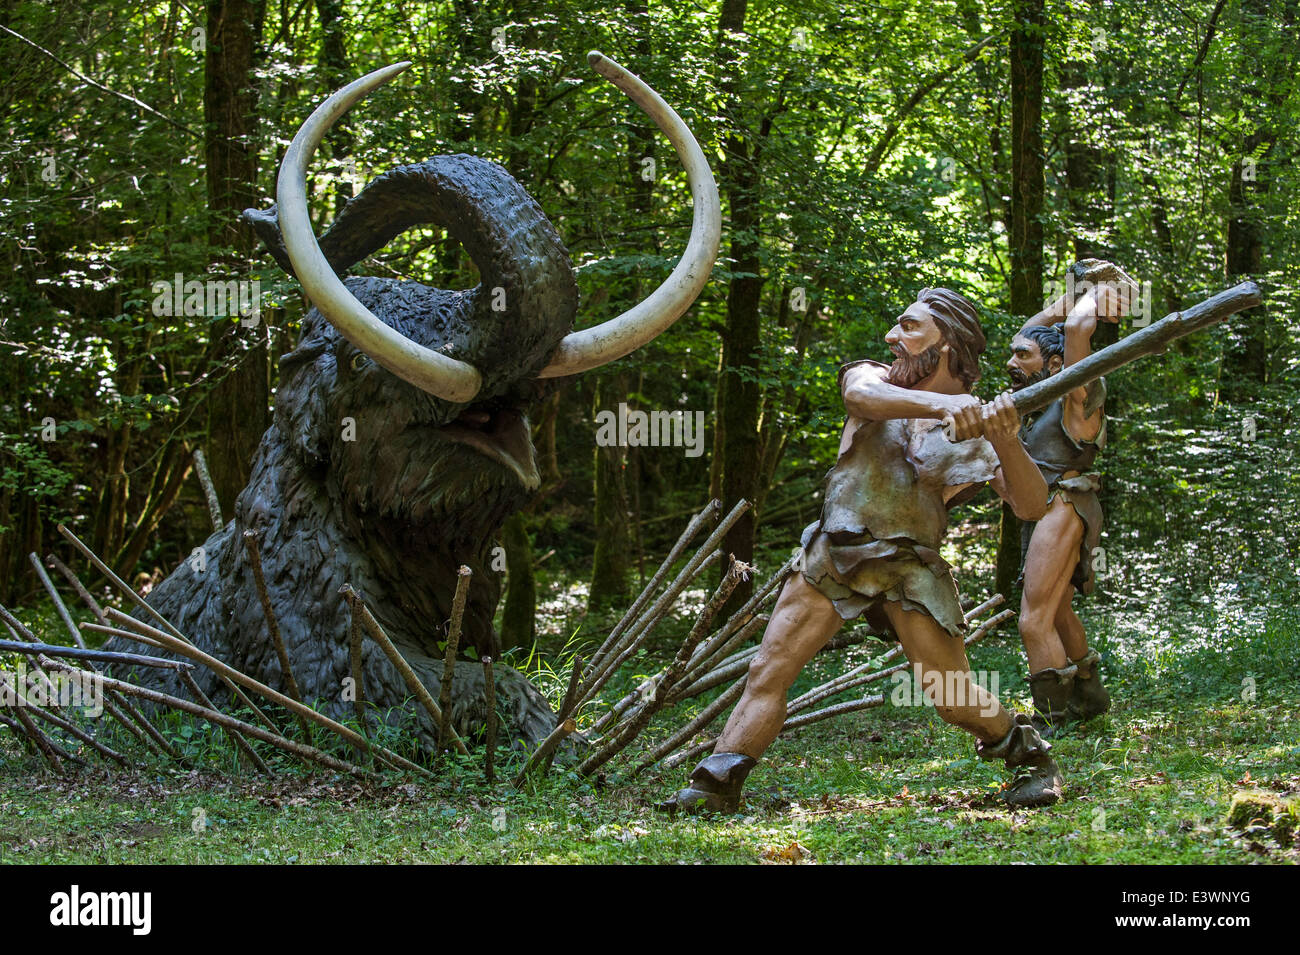 Les chasseurs néandertaliens tuant piégés au mammouth préhistorique Préhisto Parc, Tursac, Dordogne, Aquitaine, France Banque D'Images